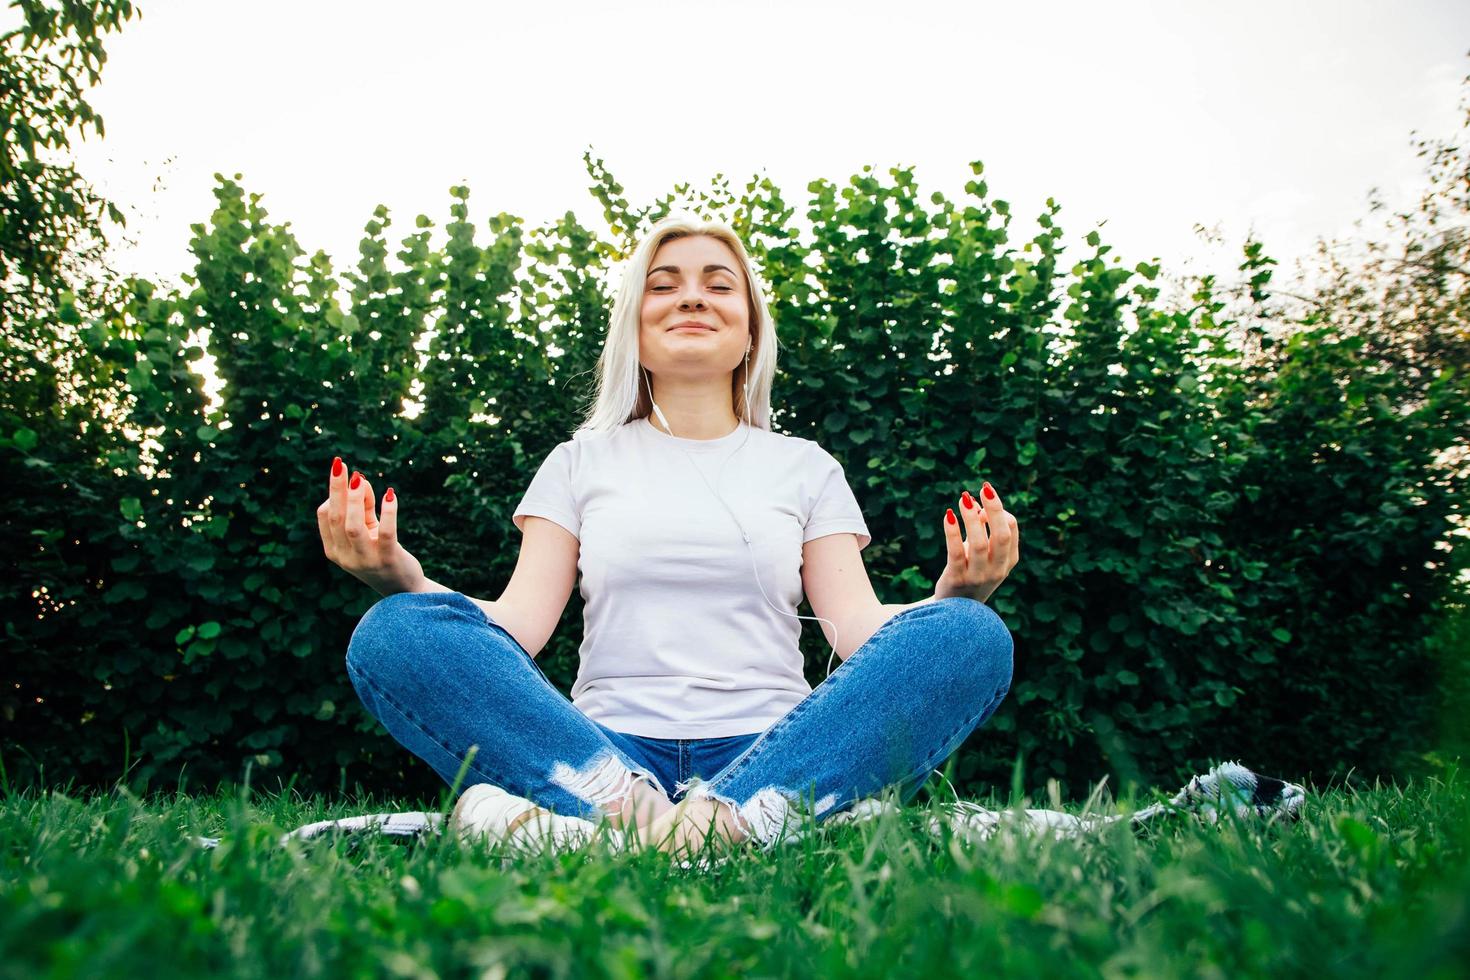 mulher com fones de ouvido sentada em pose meditativa na grama verde foto